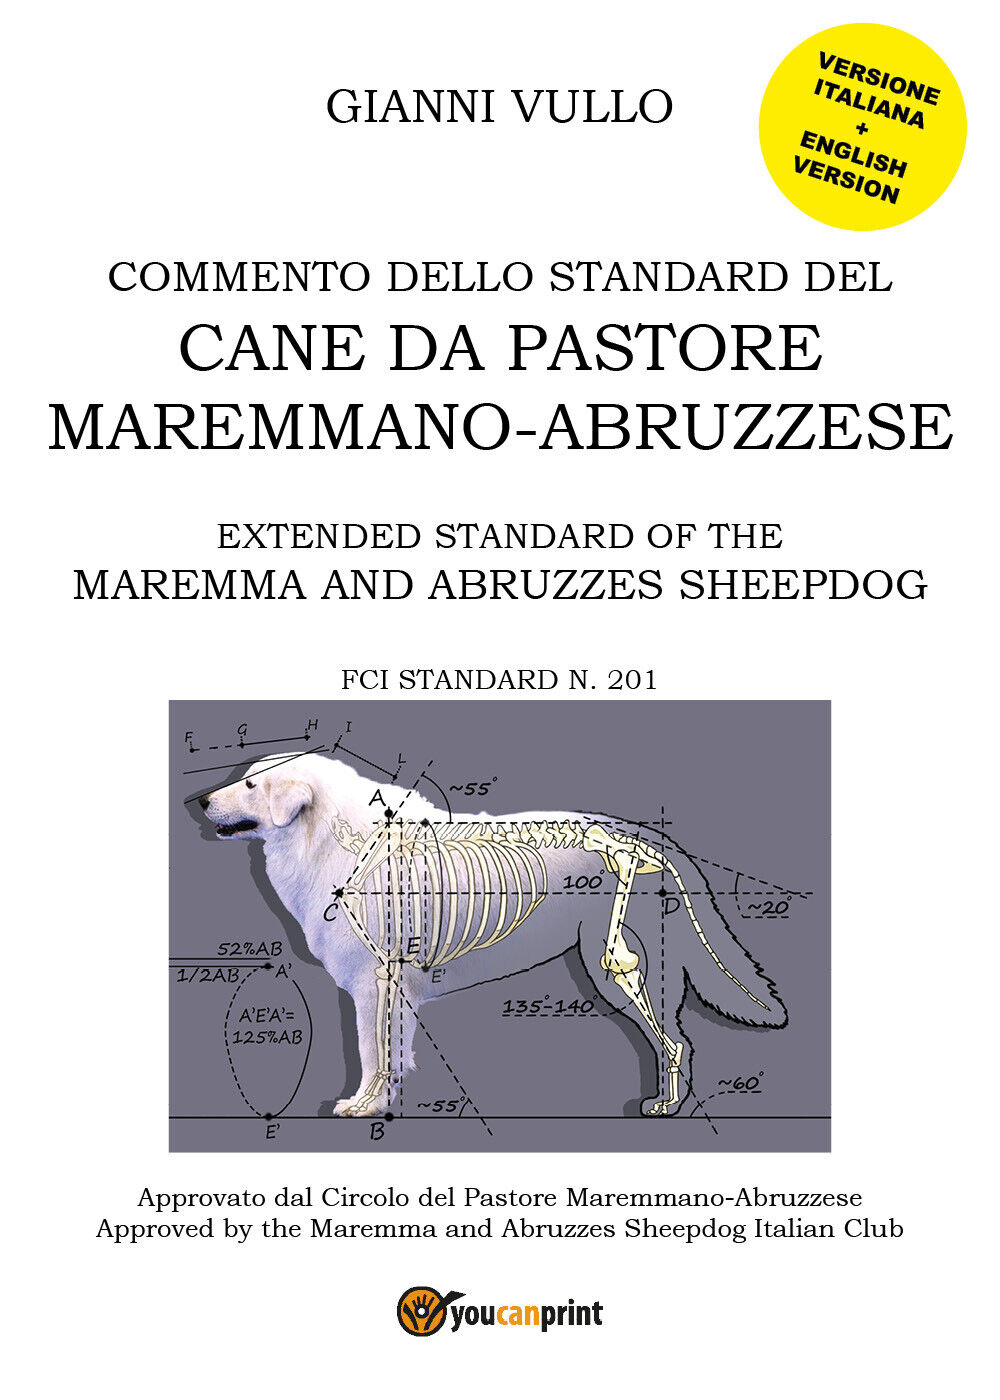 Commento dello Standard del cane da Pastore Maremmano-Abruzzese (G. Vullo) - ER